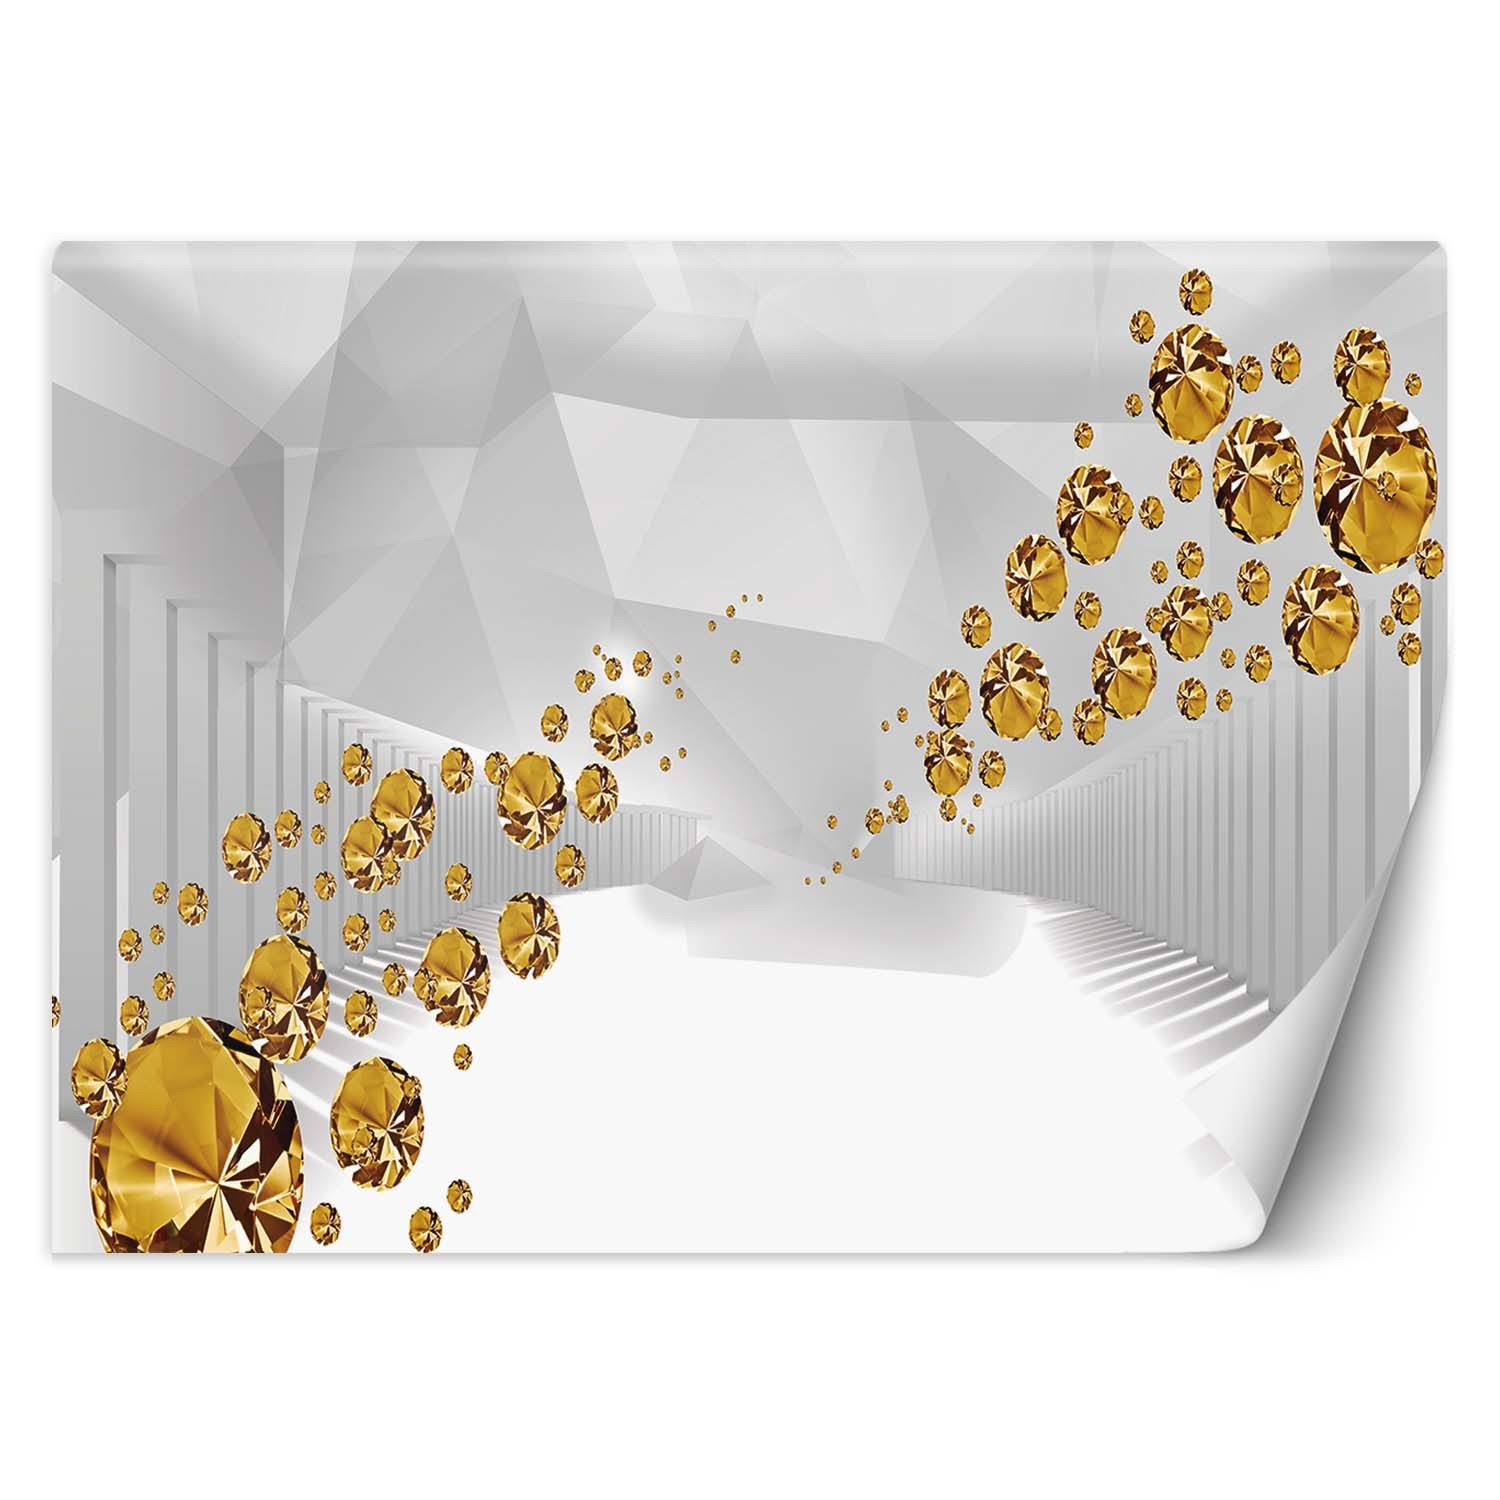 Trend24 – Behang – Gouden Stenen In Een Abstracte Tunnel – Vliesbehang – Fotobehang 3D – Behang Woonkamer – 400x280x2 cm – Incl. behanglijm